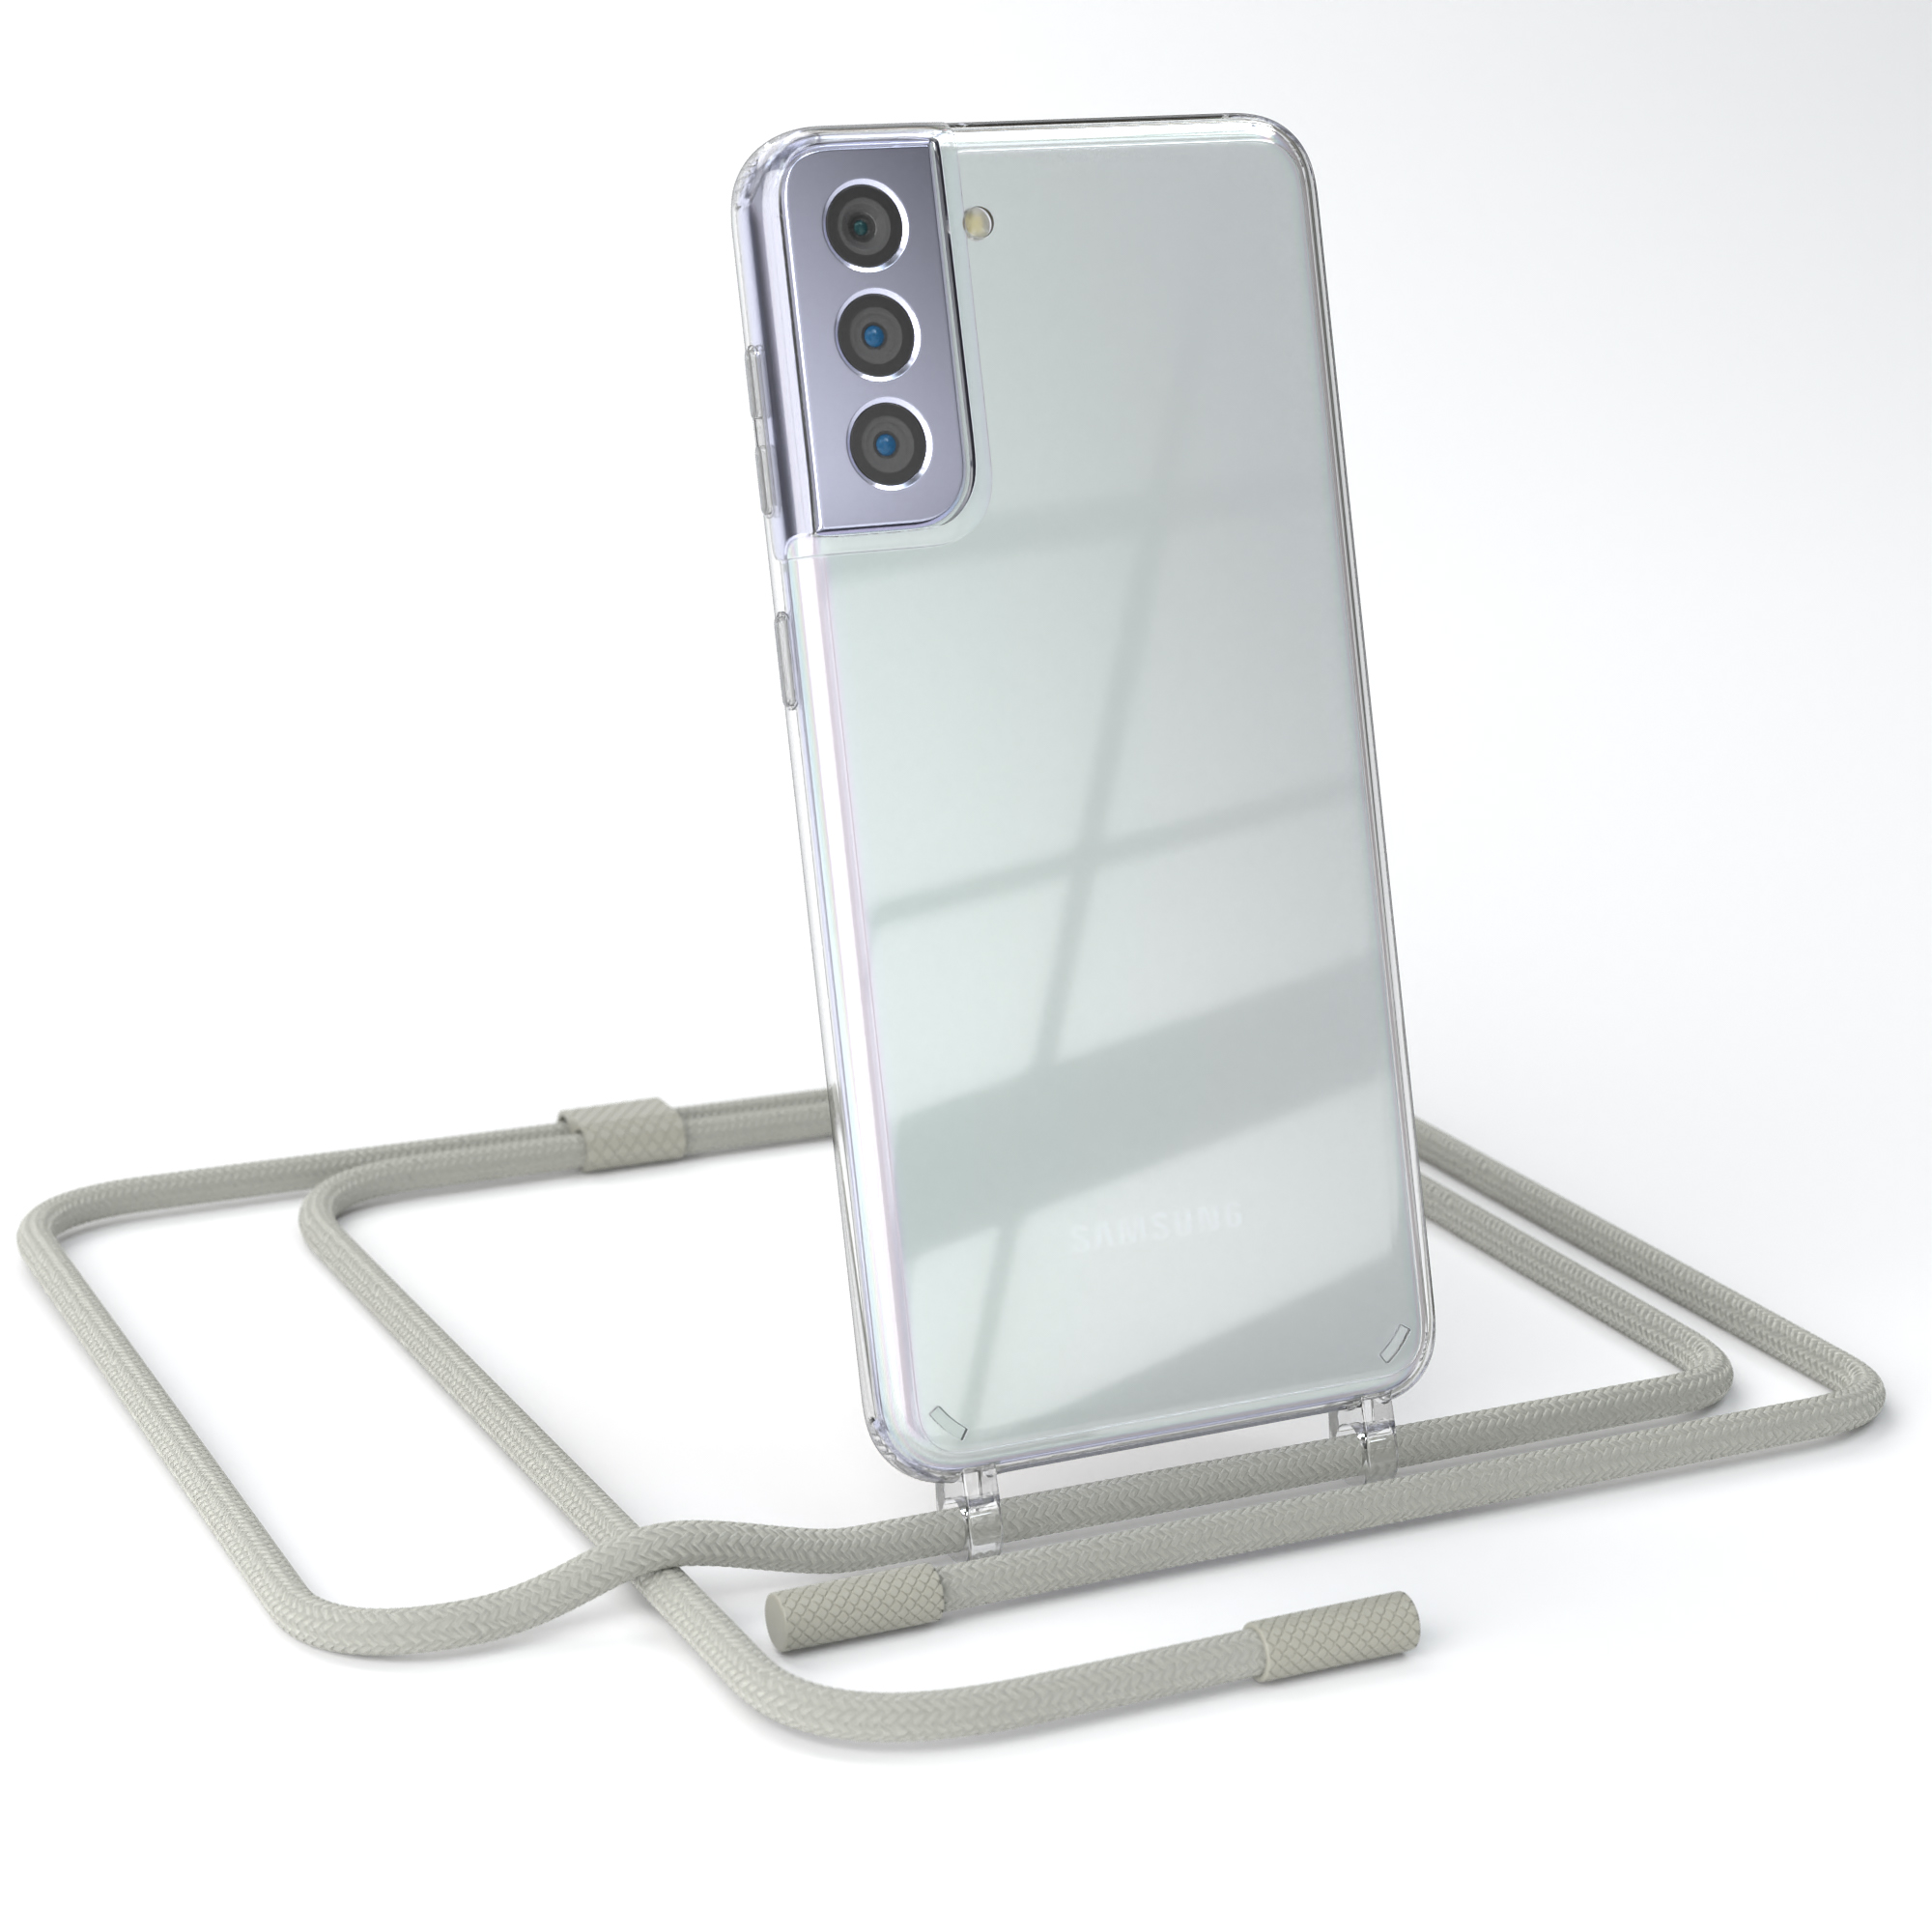 EAZY CASE Samsung, S21 Transparente mit Umhängetasche, runder / Galaxy Kette Handyhülle 5G, Plus Taupe unifarbend, Grau Beige